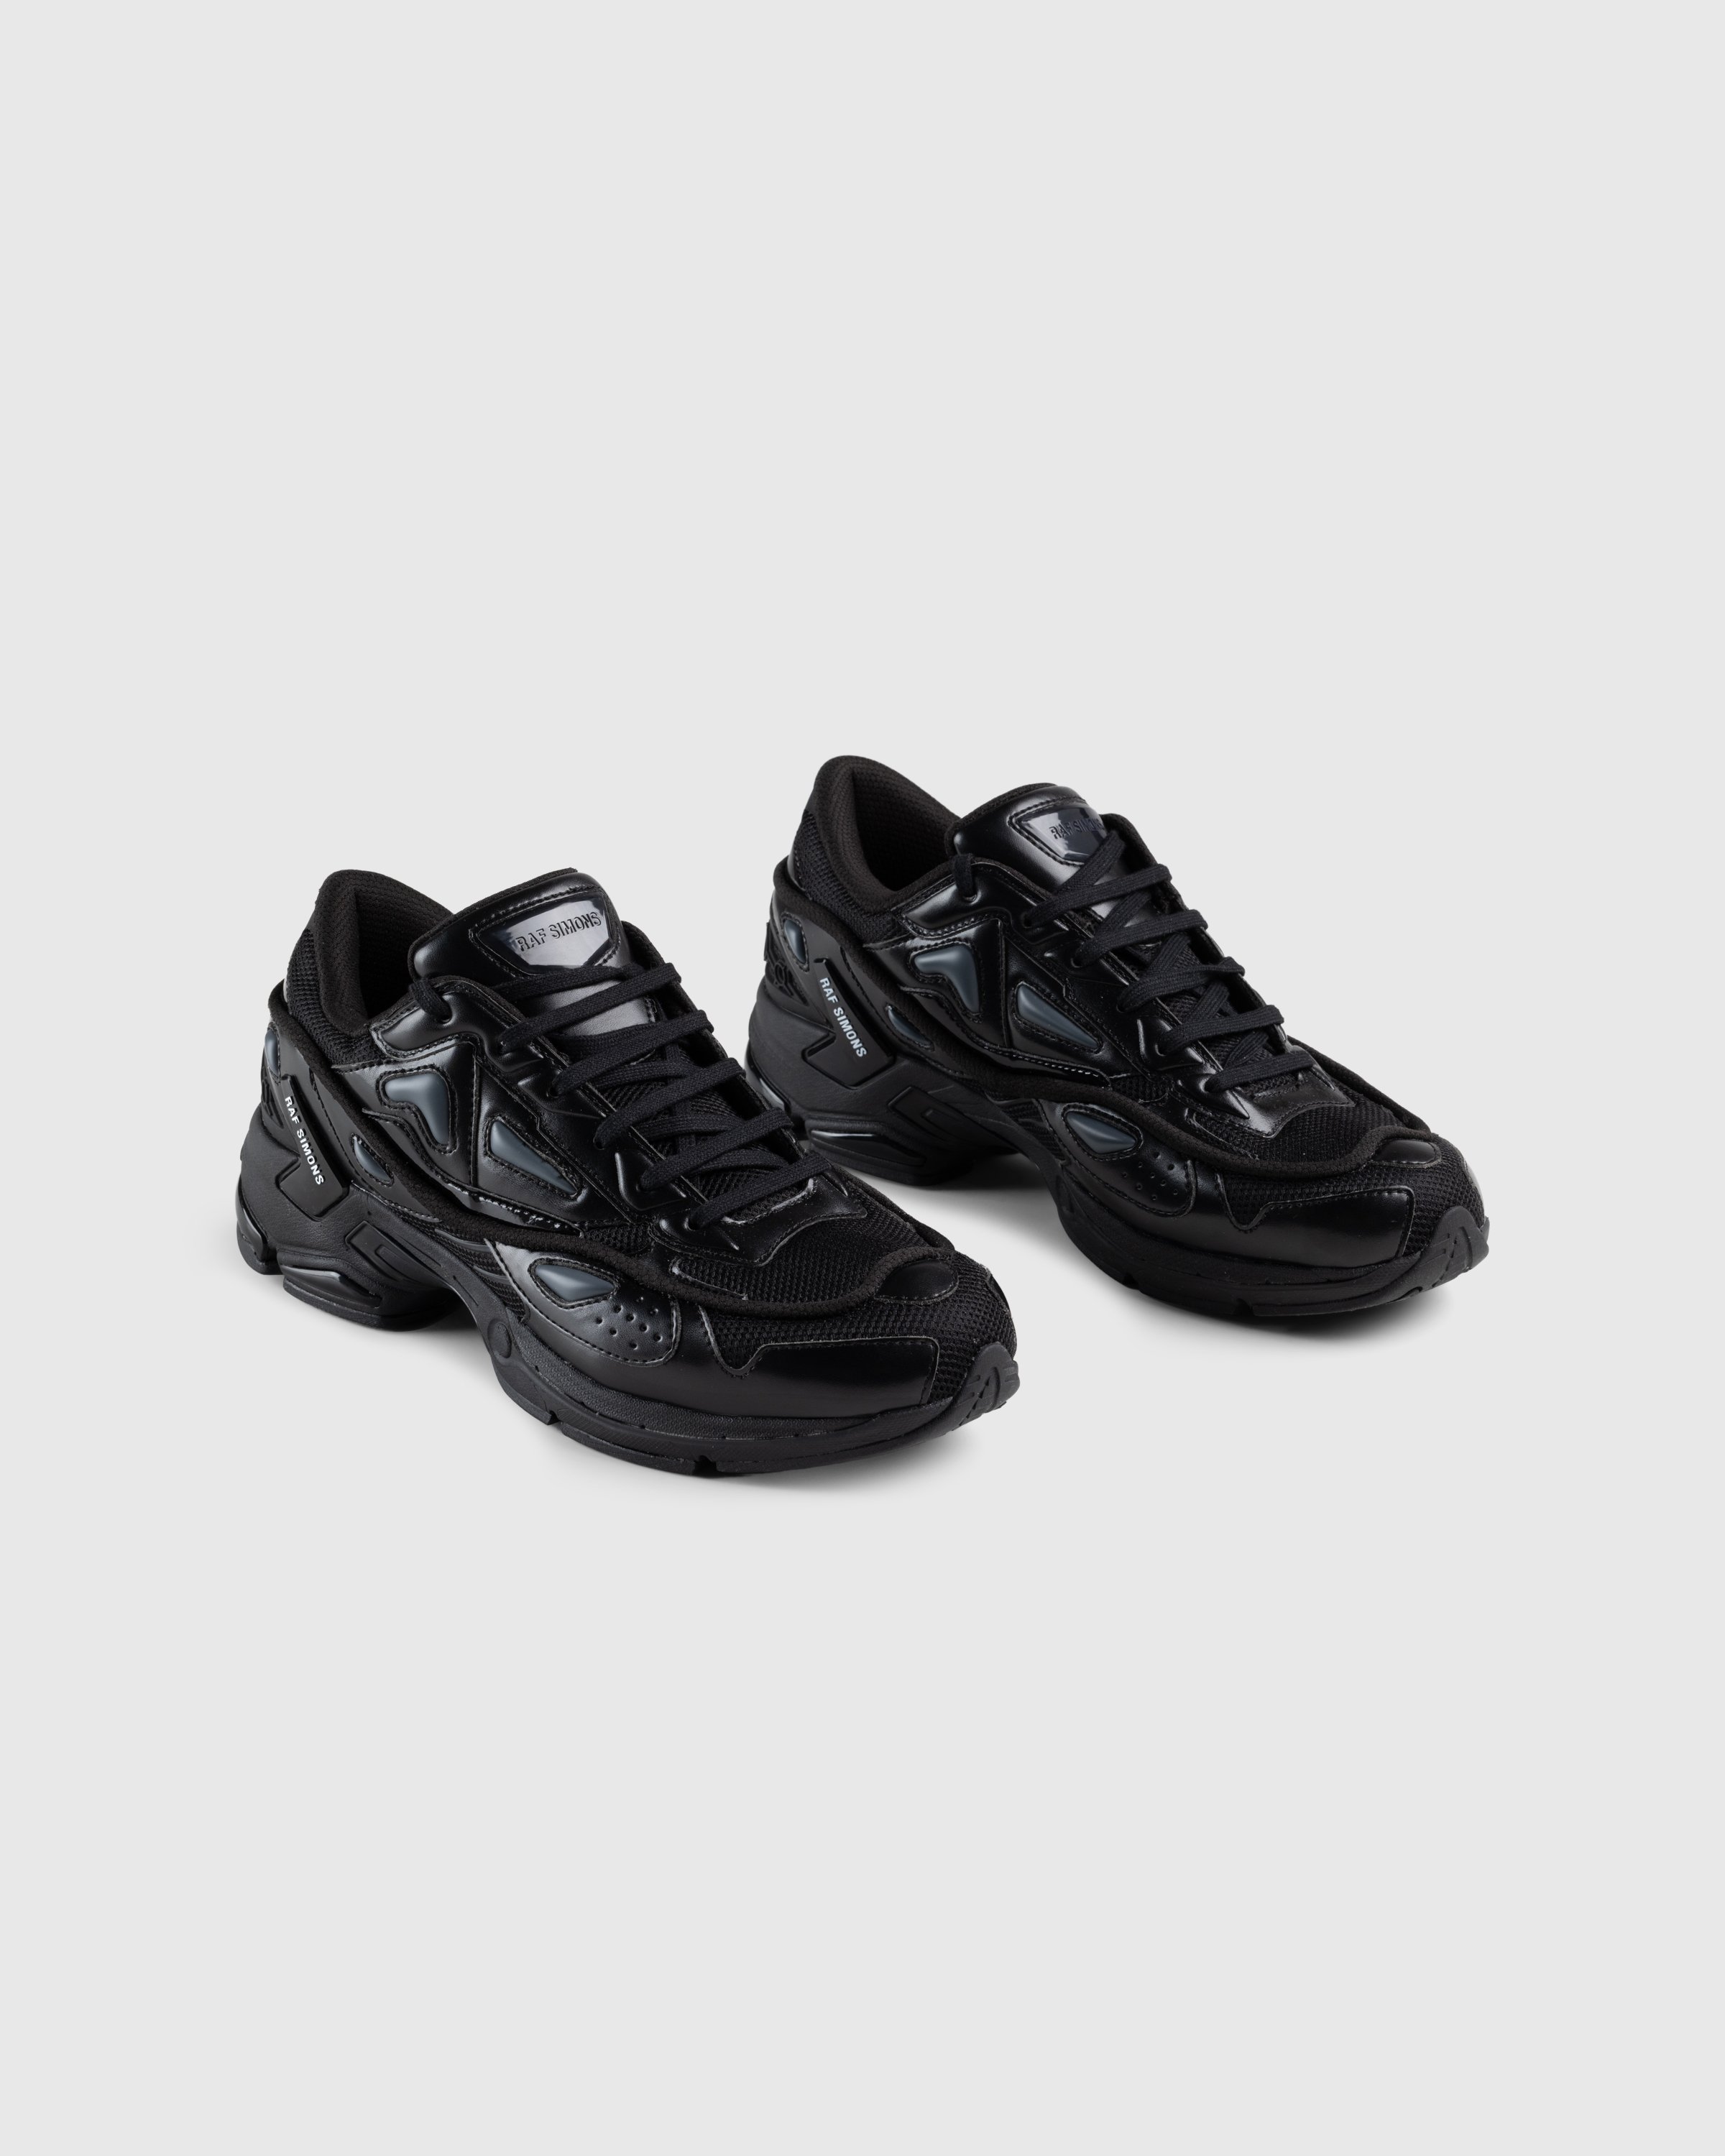 Raf Simons - Pharaxus Sneaker Black - Footwear - Beige - Image 3